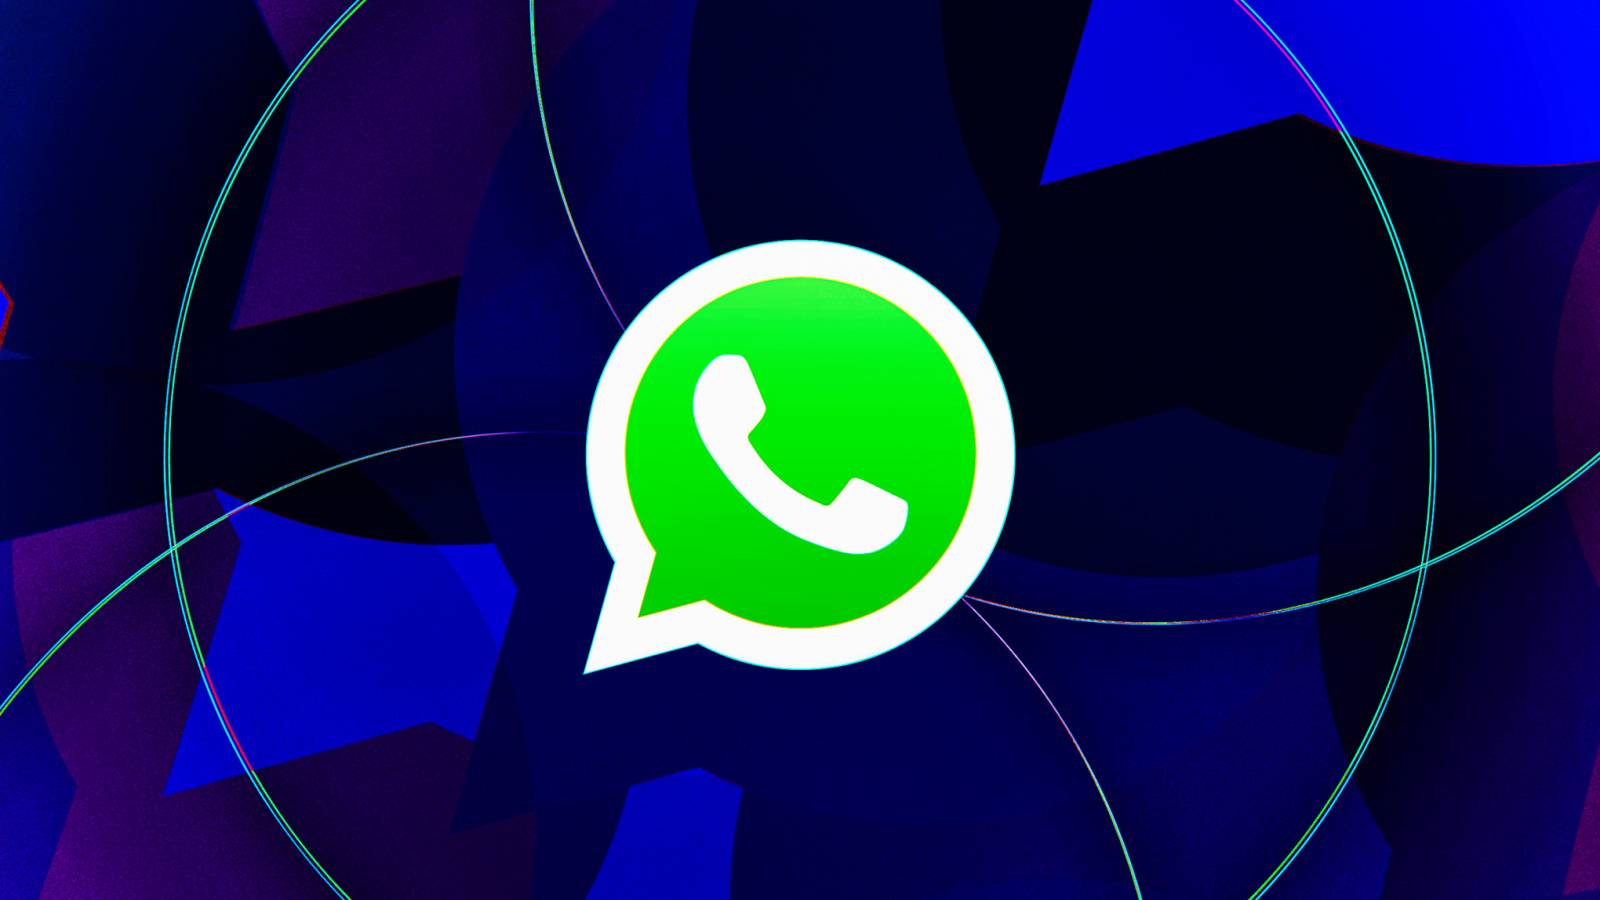 WhatsApp sorprende con nuevos cambios realizados iPhone Android